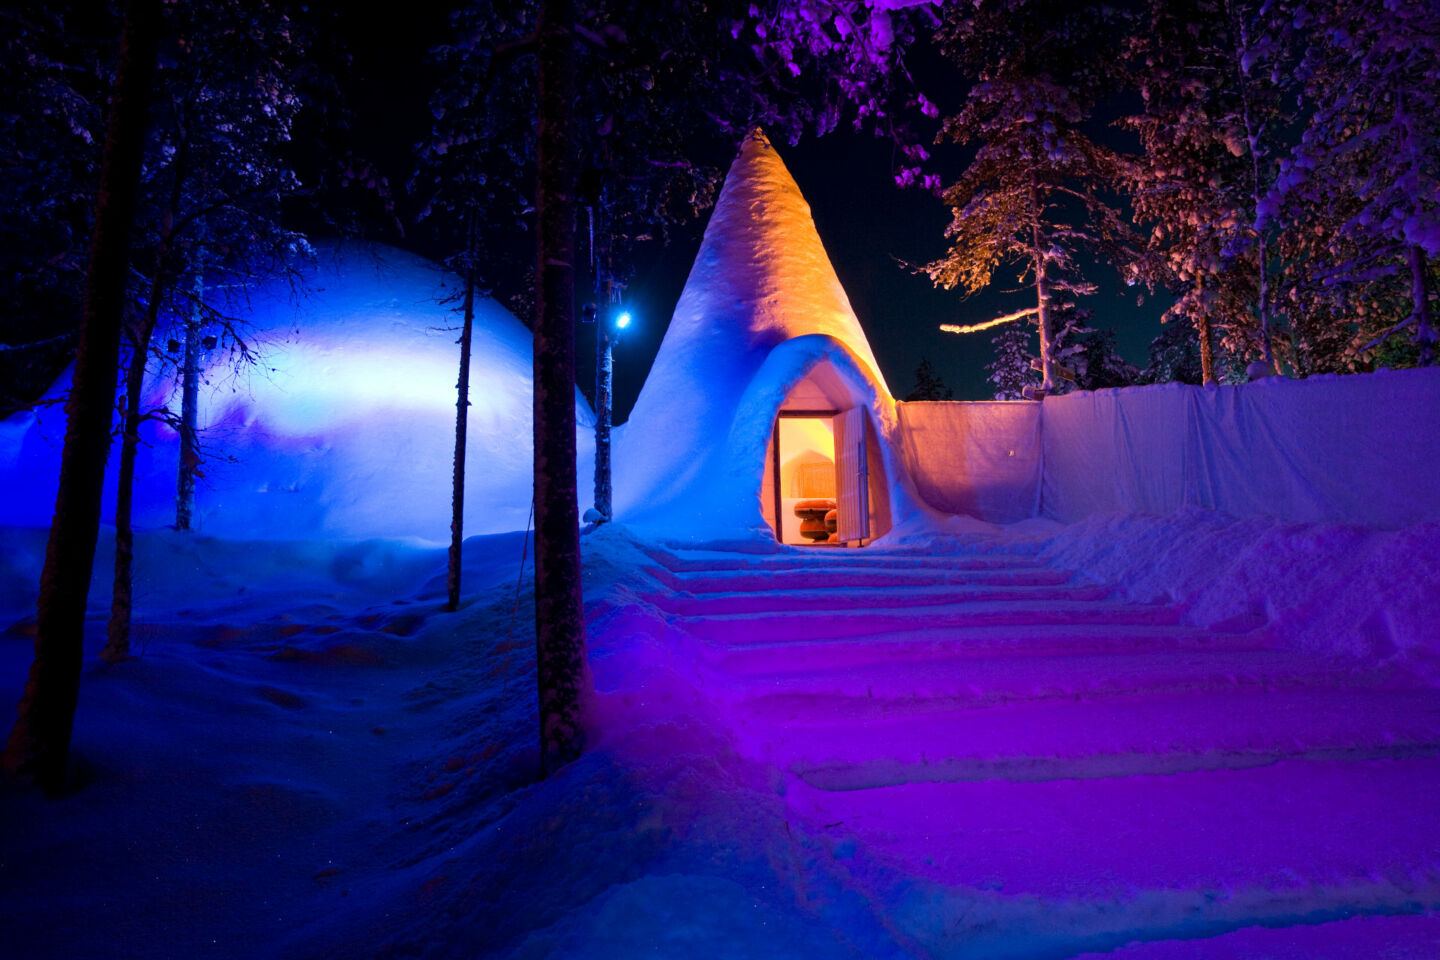 Snowman World at Santa Claus Village in Rovaniemi, Finland